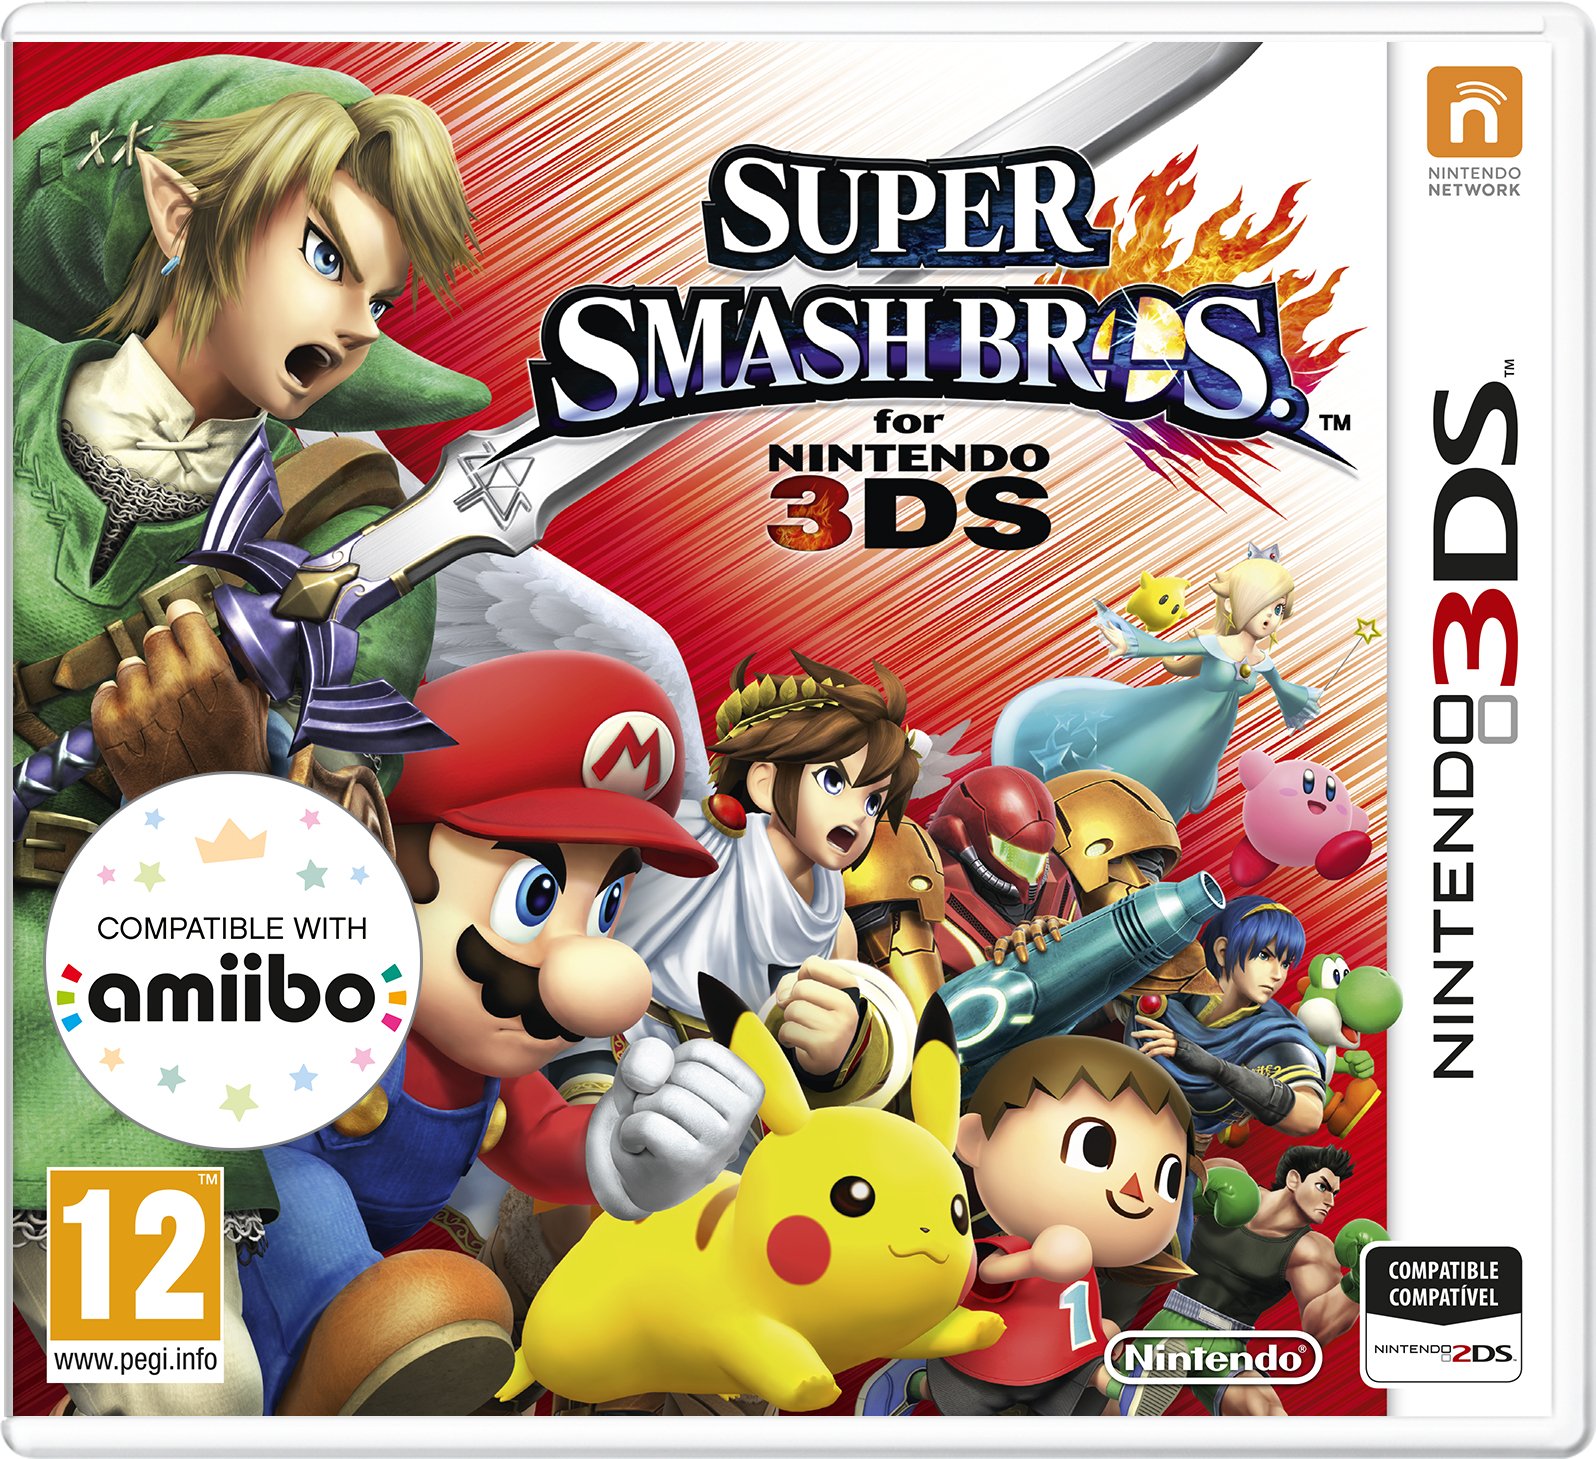 Super Smash Bros. for 3DS (Nintendo 3DS)